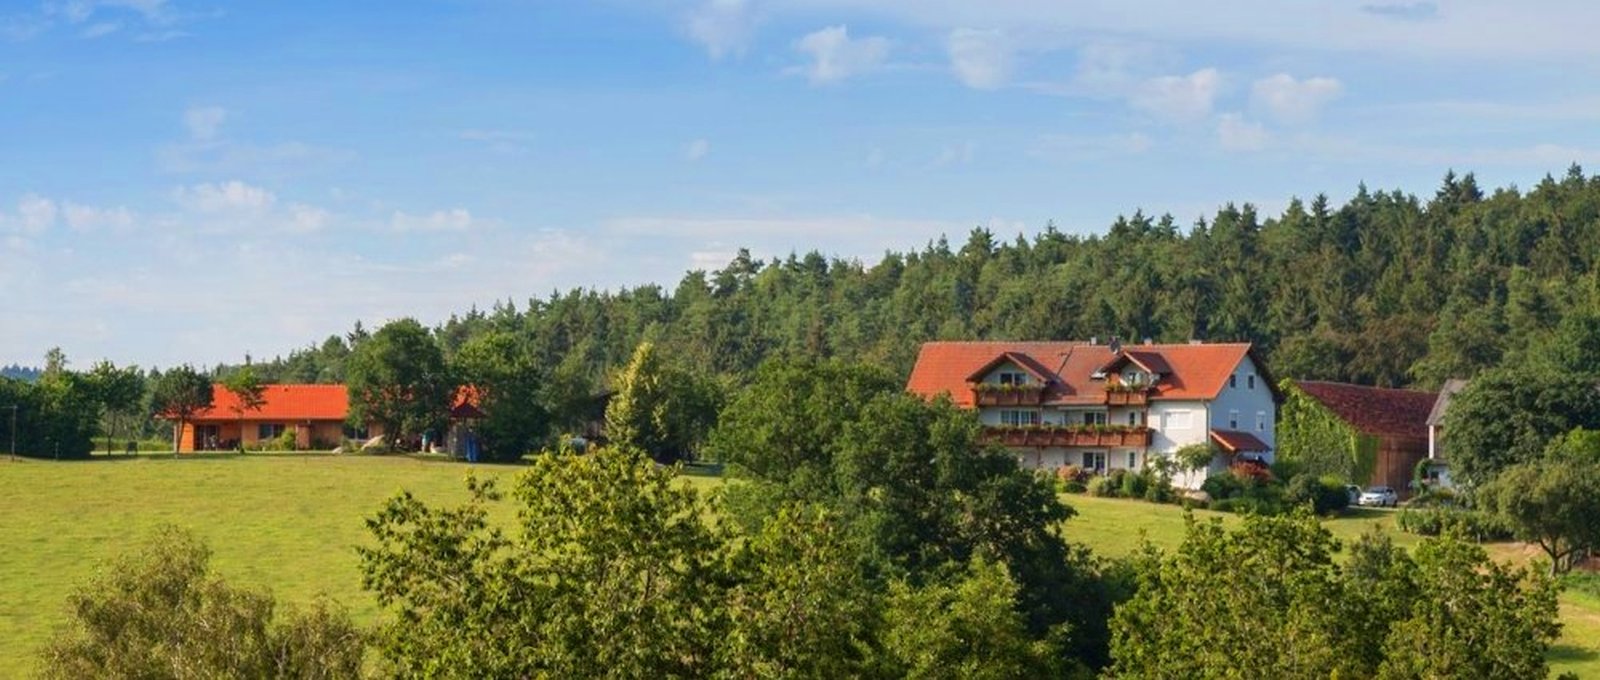 Bauernhof Schiegl in Brennberg – Kontakt